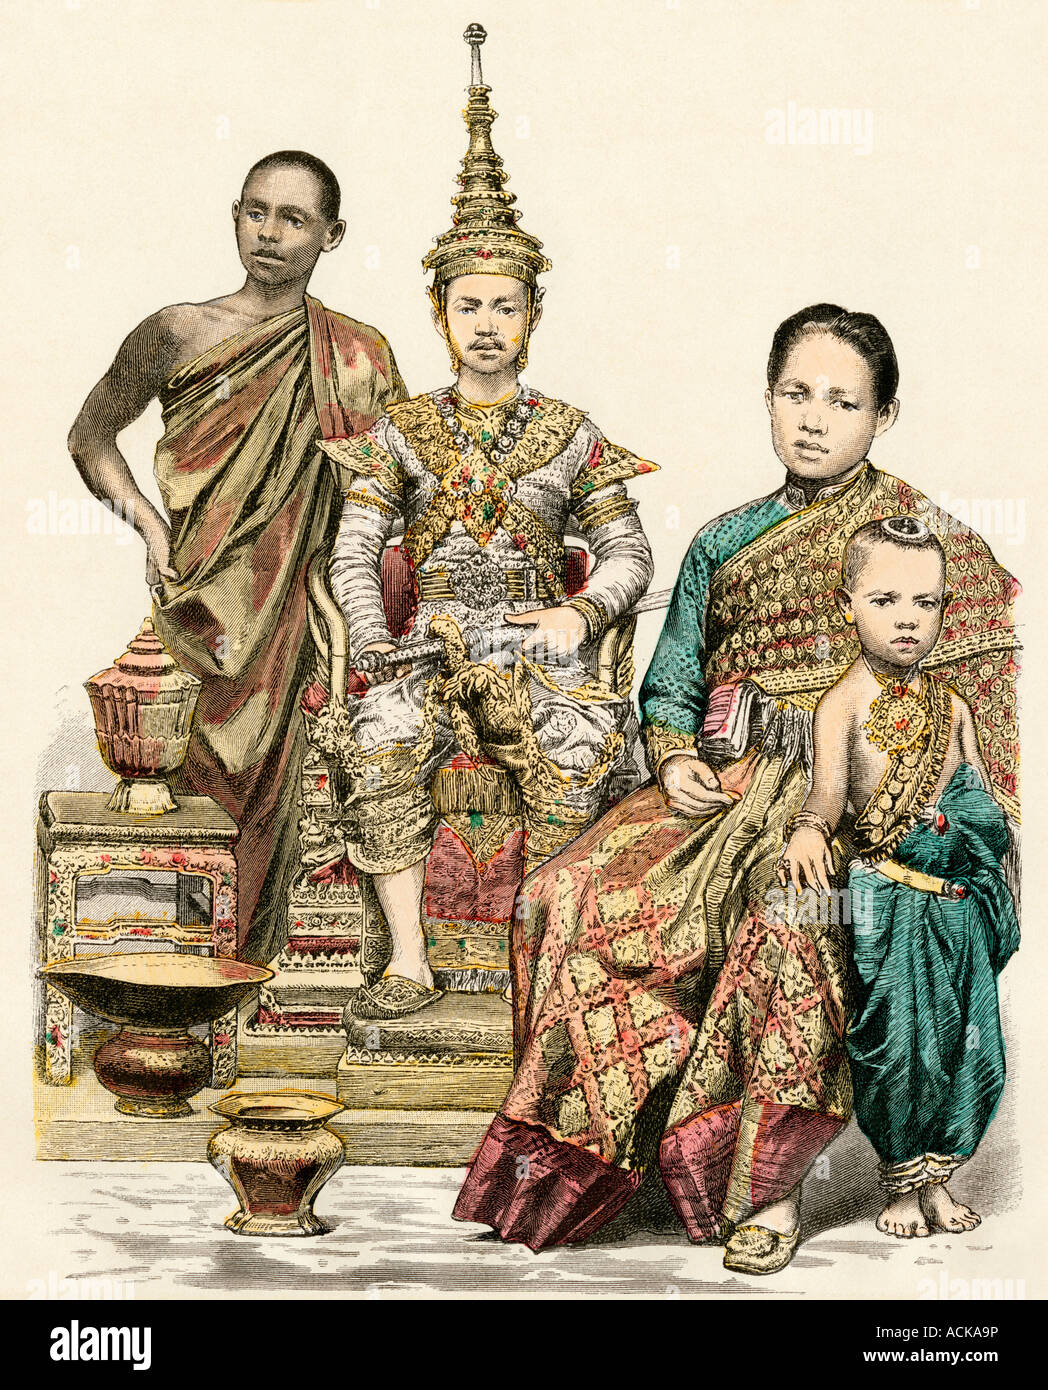 Roi reine et jeune prince de Siam et un moine bouddhiste des années 1800. Impression couleur à la main Banque D'Images